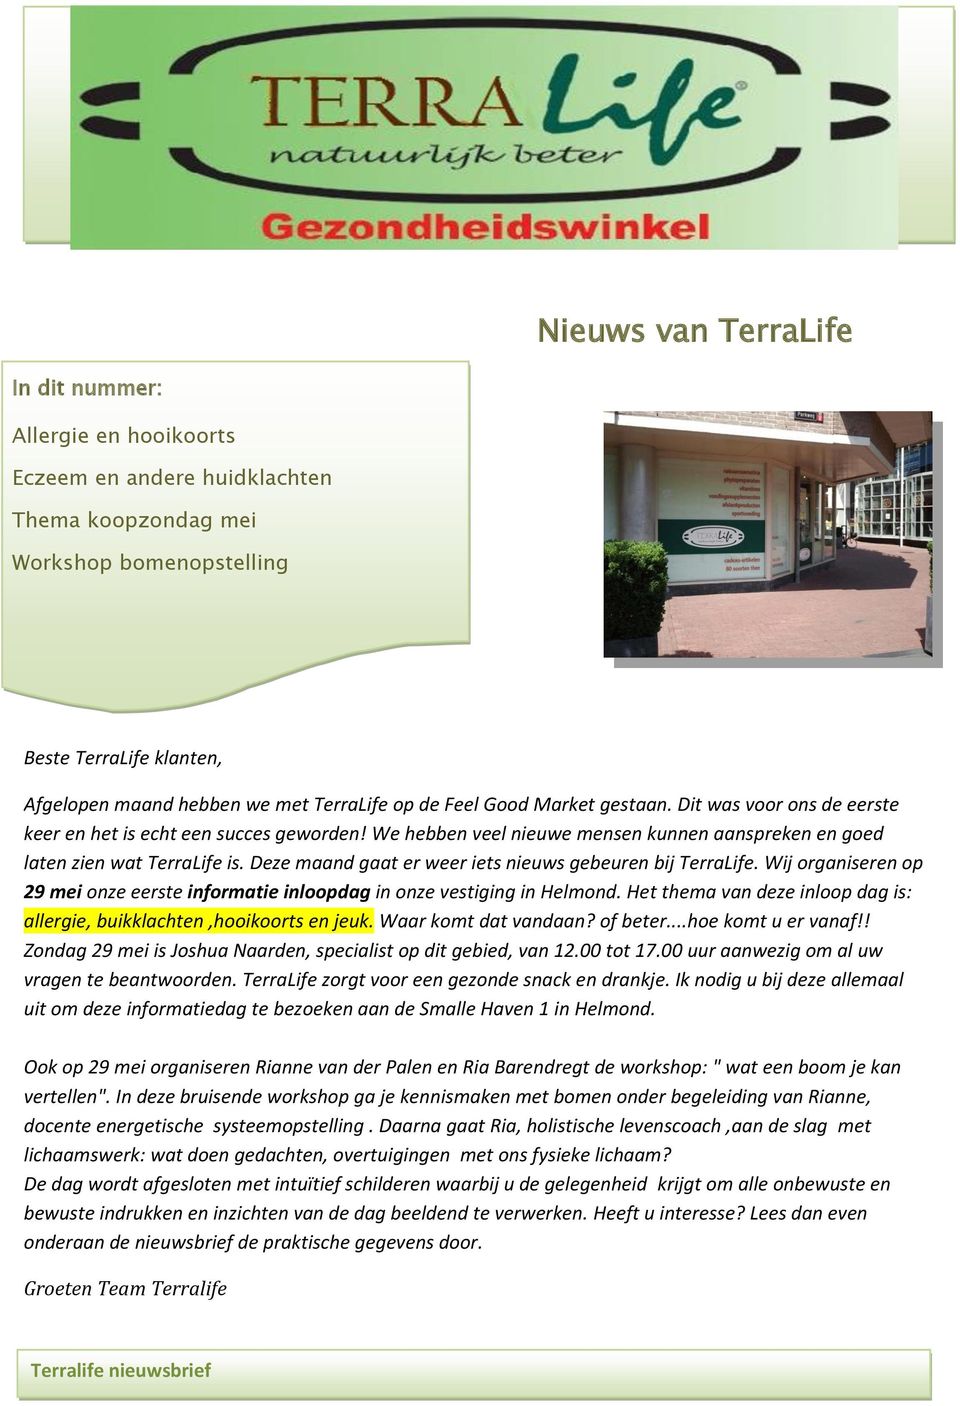 Deze maand gaat er weer iets nieuws gebeuren bij TerraLife. Wij organiseren op 29 mei onze eerste informatie inloopdag in onze vestiging in Helmond.